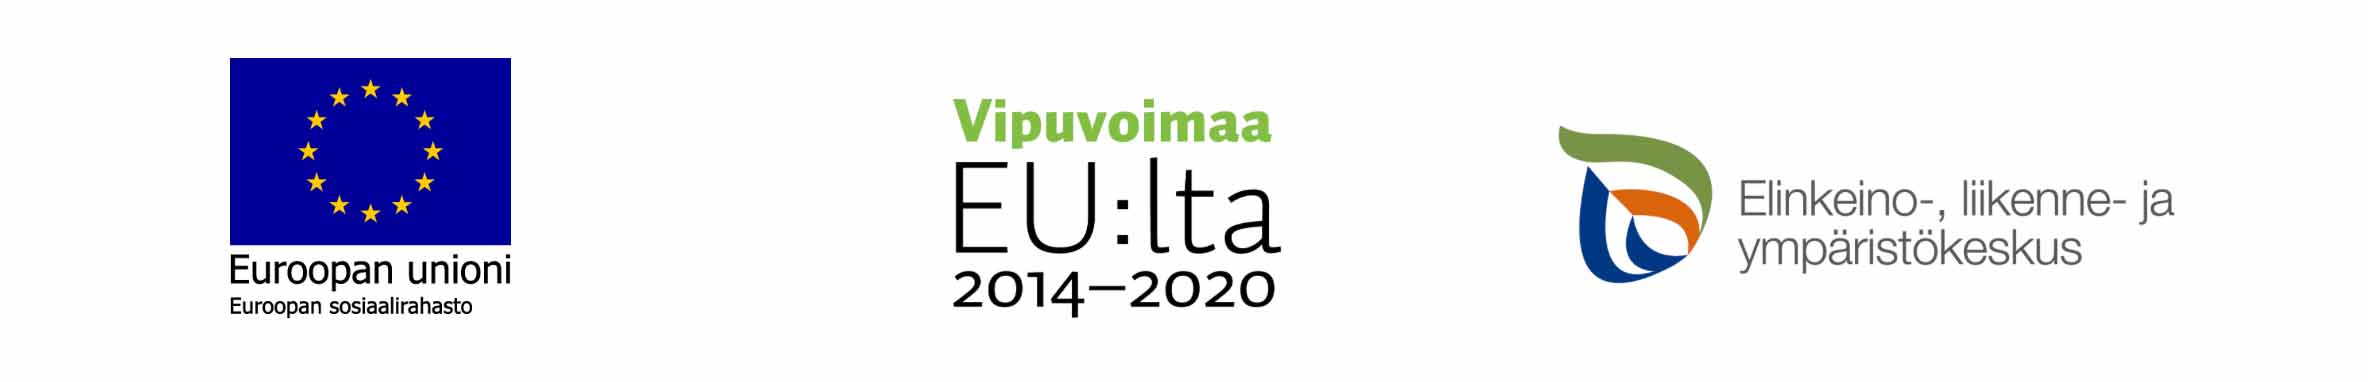 Mission Positive Handprint -hankkeen rahoittajat: Euroopan Unioni - Vipuvoimaa EU:lta - Elinkeino-, liikenne ja ympäristökeskus